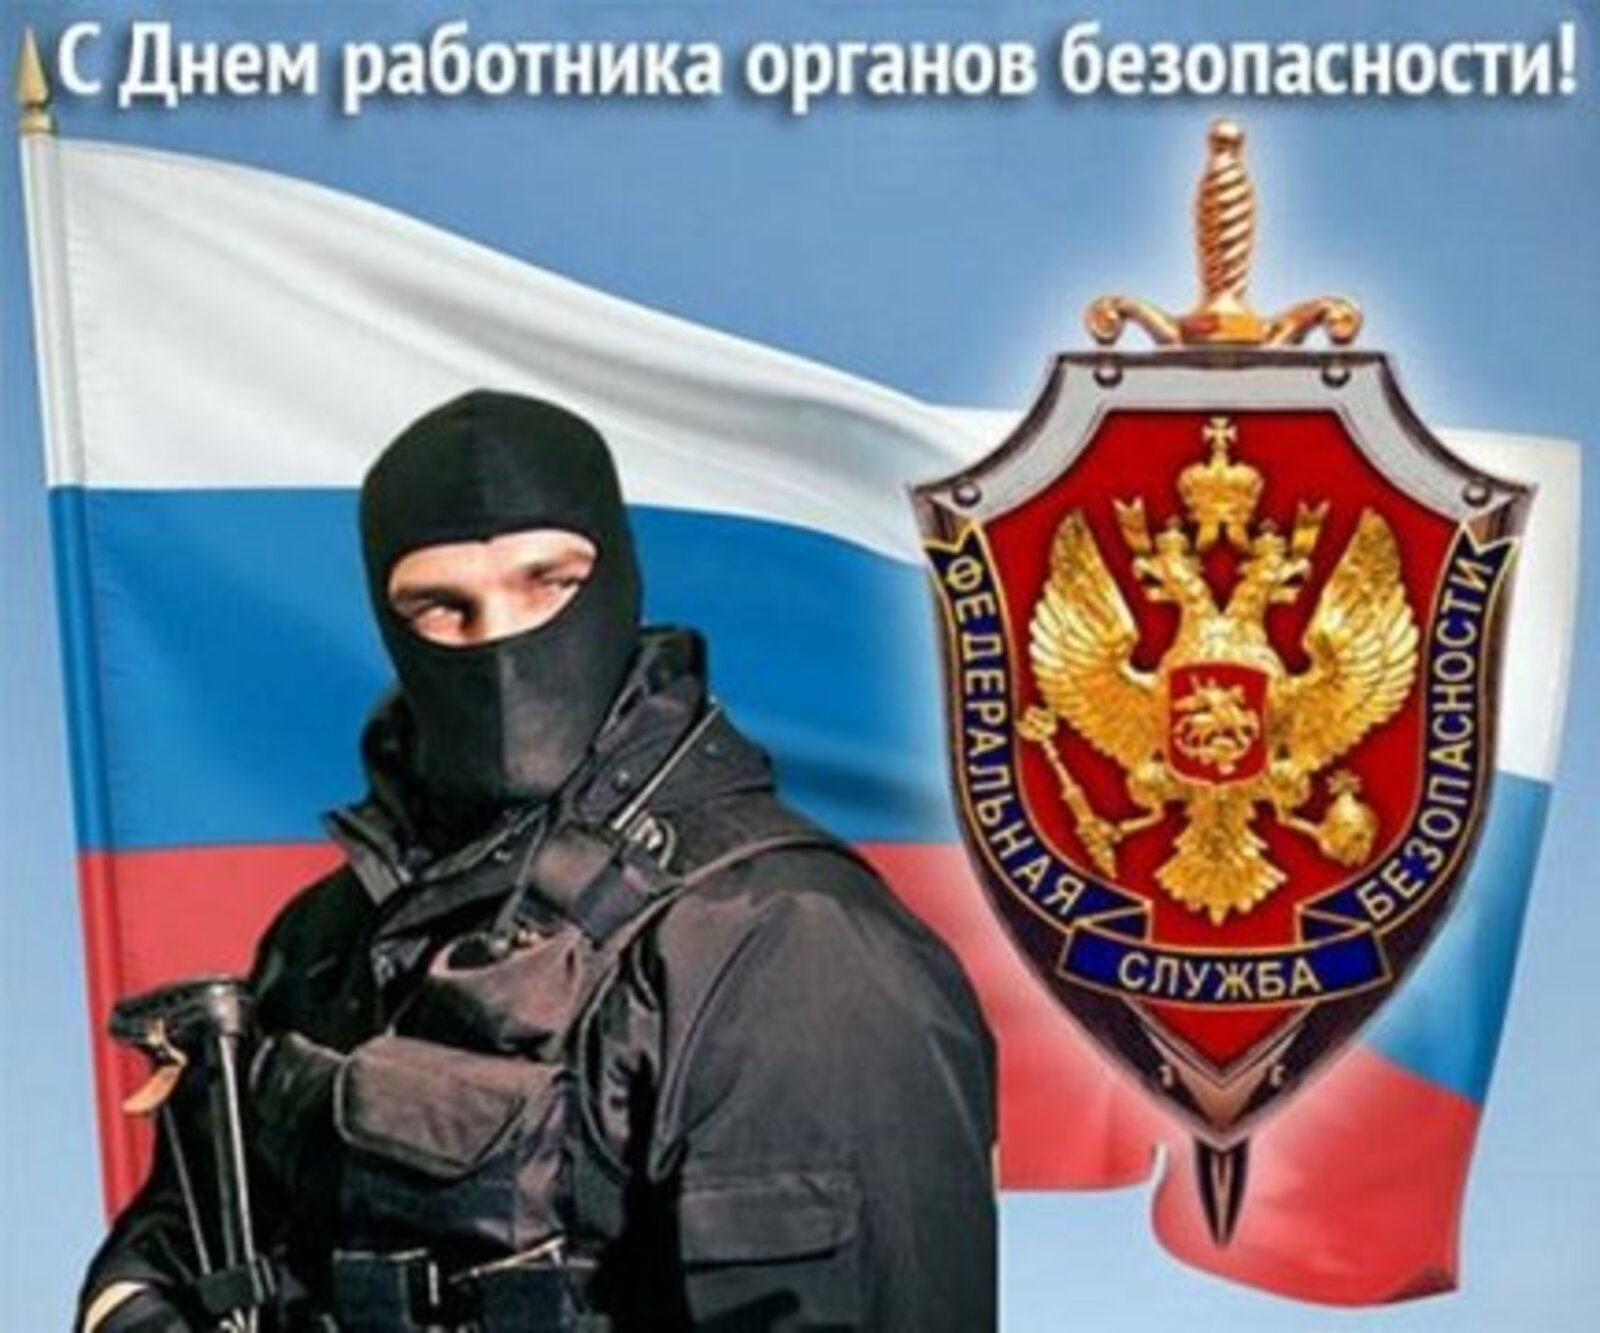 Безопасности российской федерации в части. День работника органов безопасности.